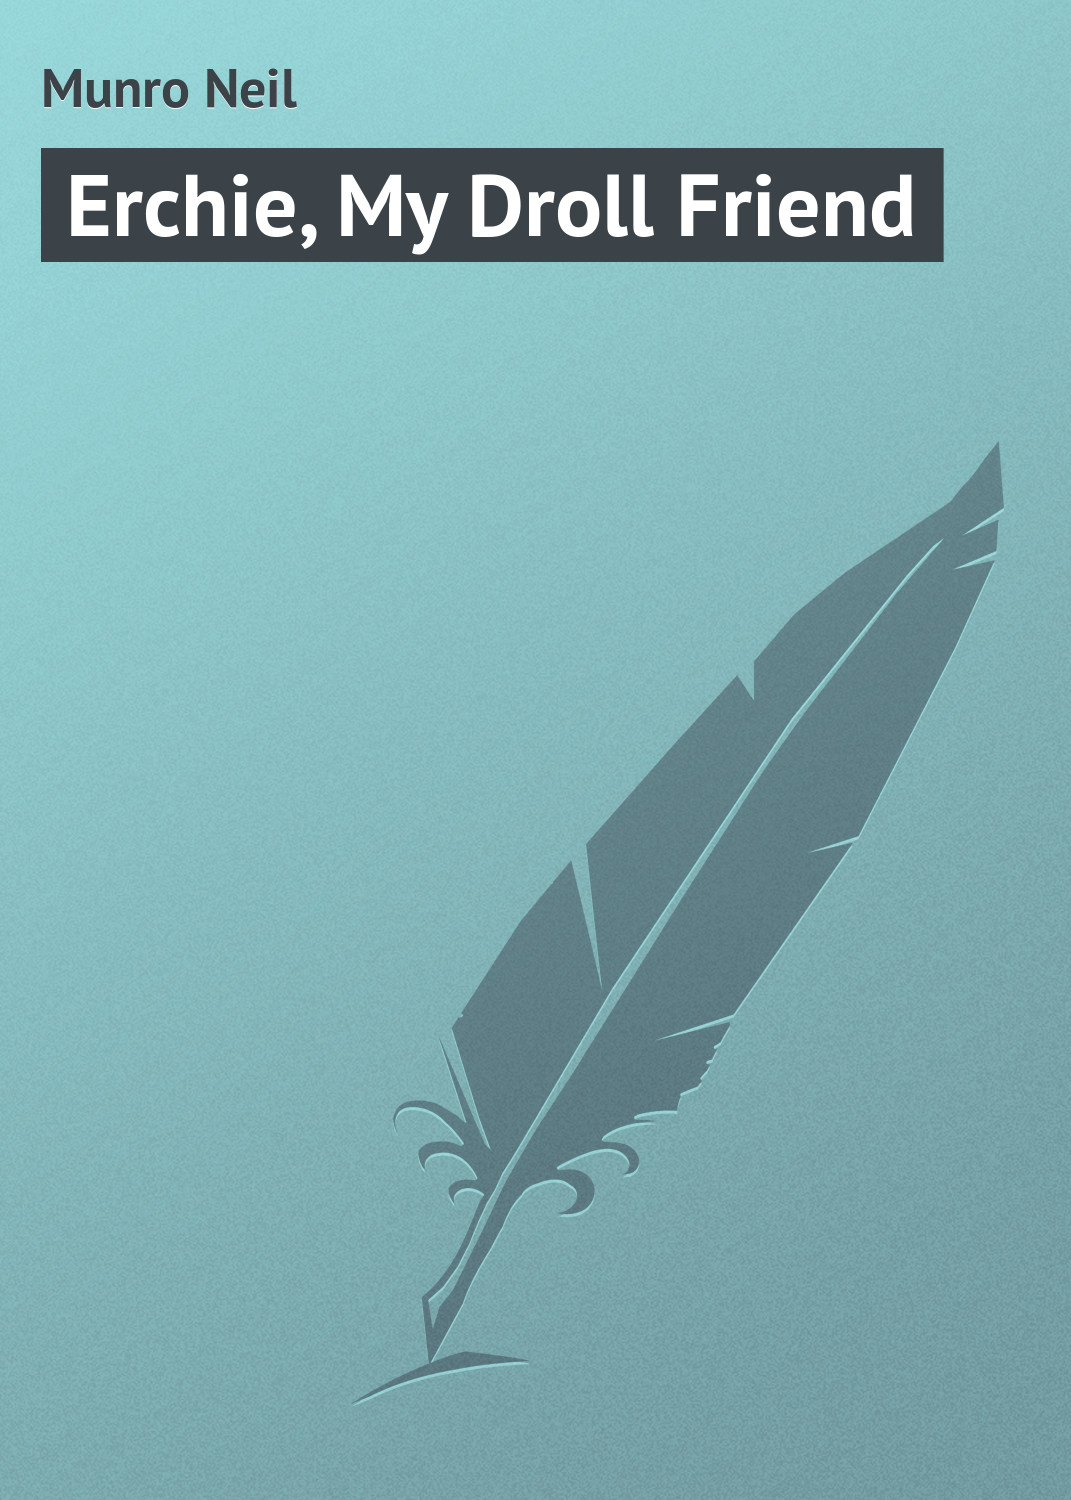 Книга Erchie, My Droll Friend из серии , созданная Neil Munro, может относится к жанру Зарубежная классика. Стоимость электронной книги Erchie, My Droll Friend с идентификатором 23165699 составляет 5.99 руб.